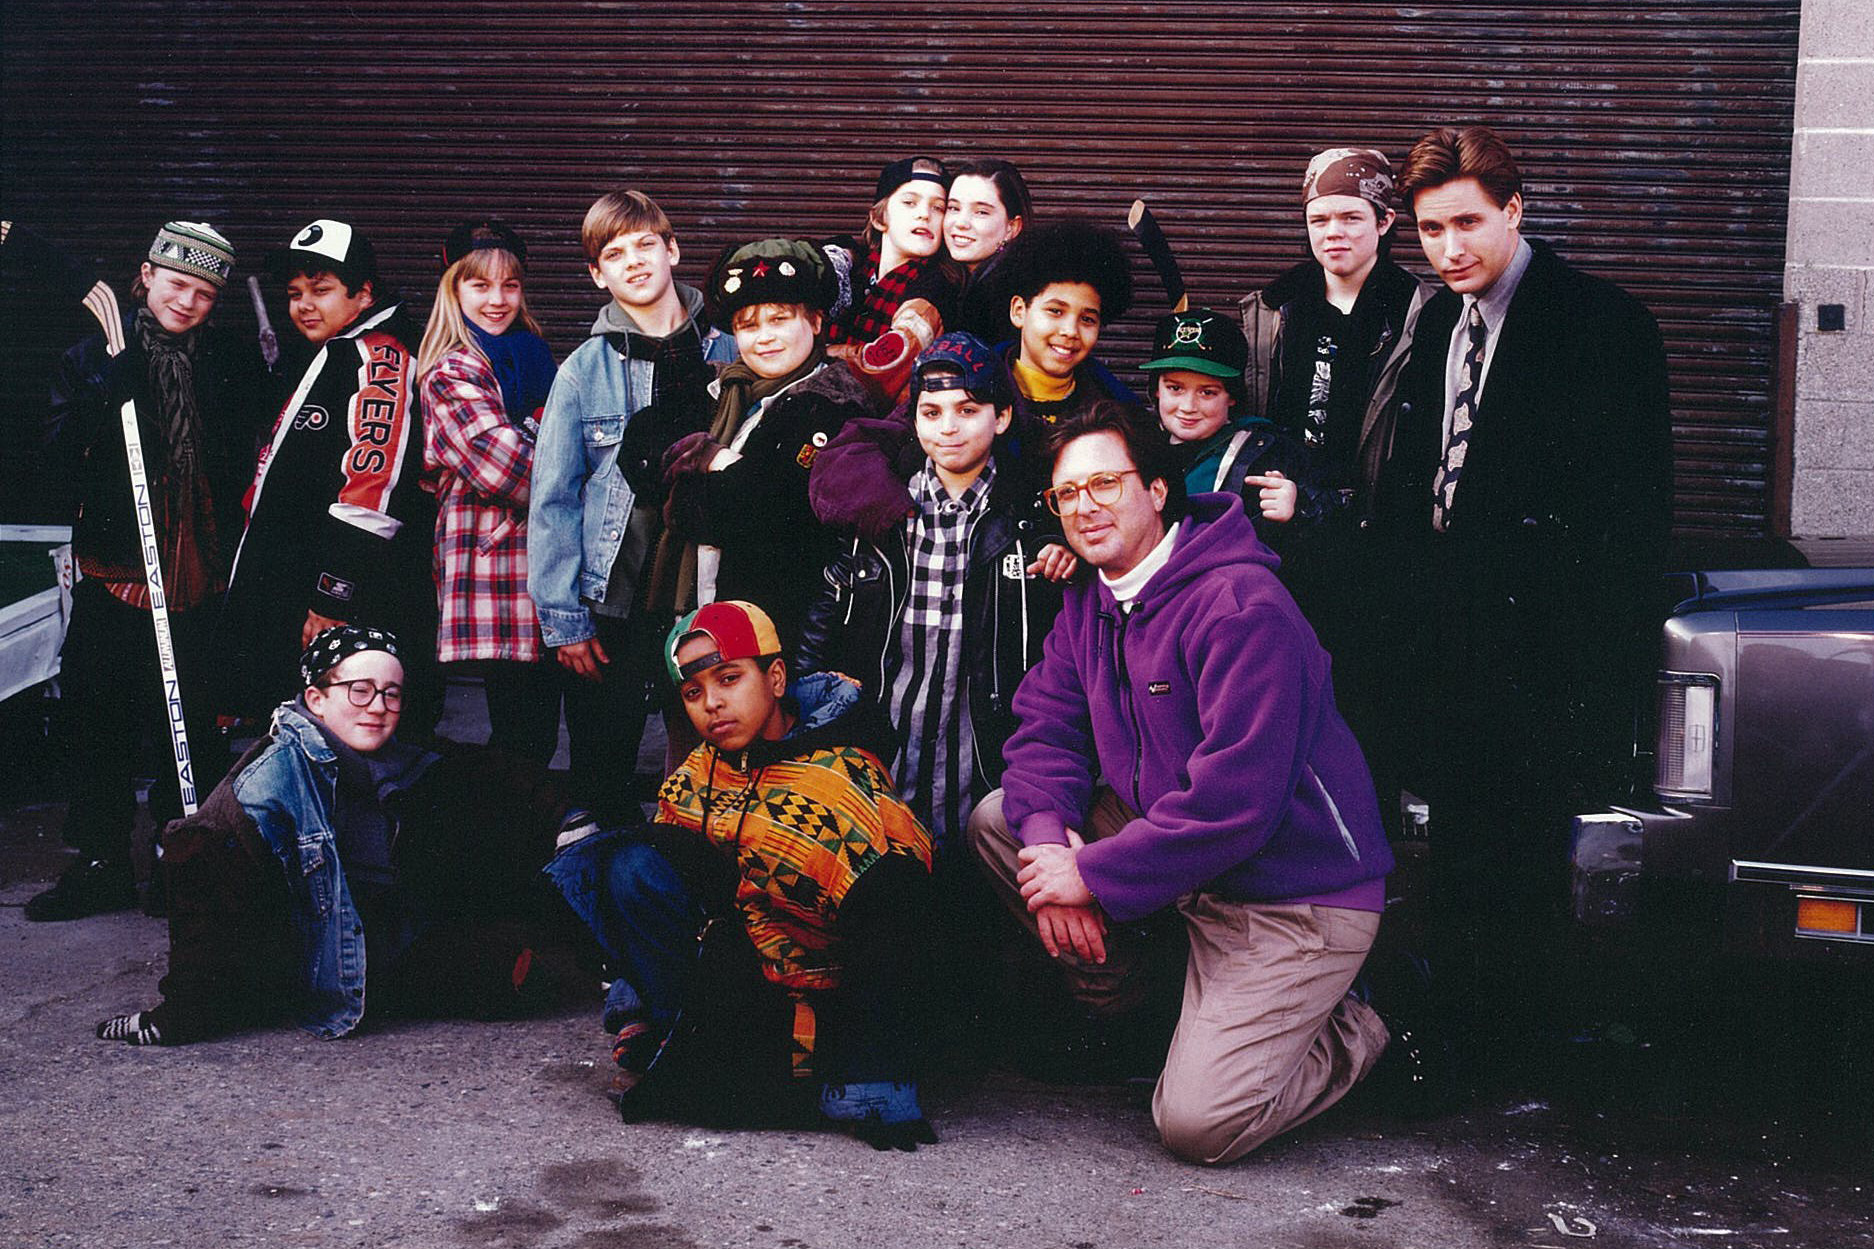 The cast of the first 'Mighty Ducks' films with producer Jordan Kerner (kneeling). (Jordan Kerner)